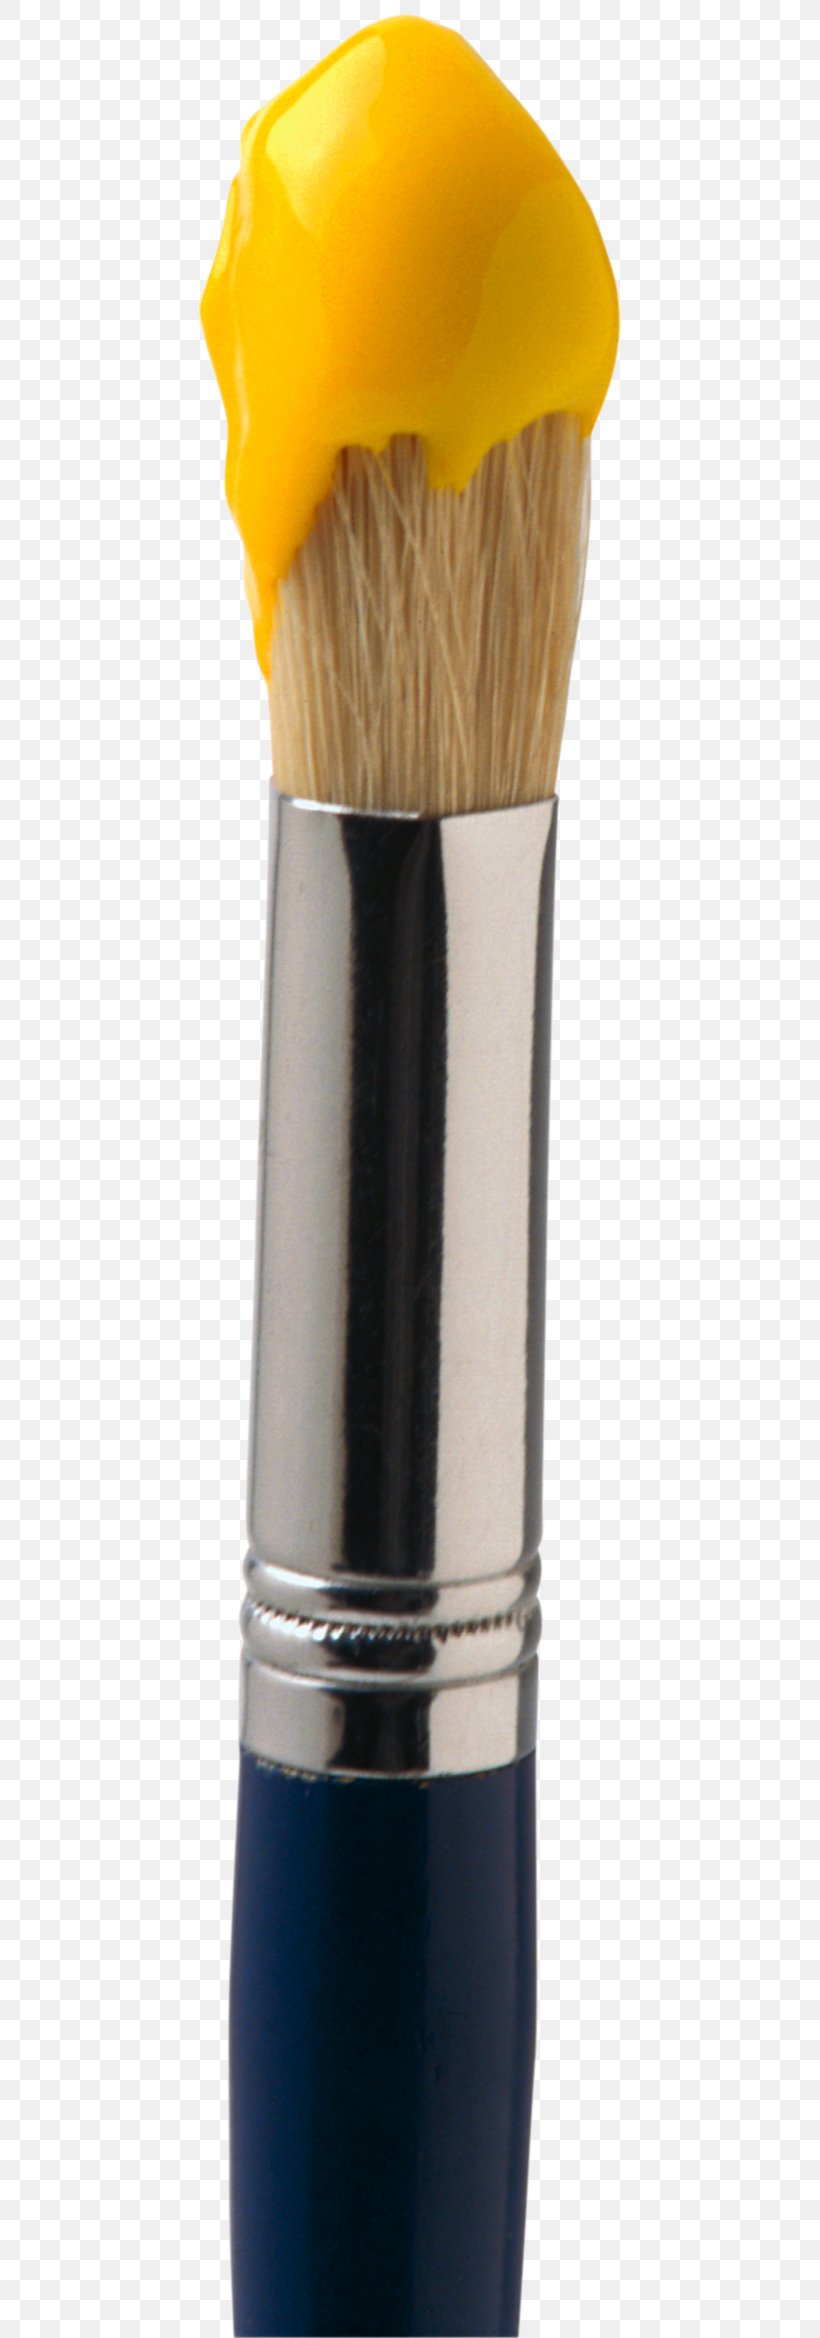 Paintbrush Palette Clip Art, PNG, 457x2338px, Paintbrush, Brush, Palette Download Free